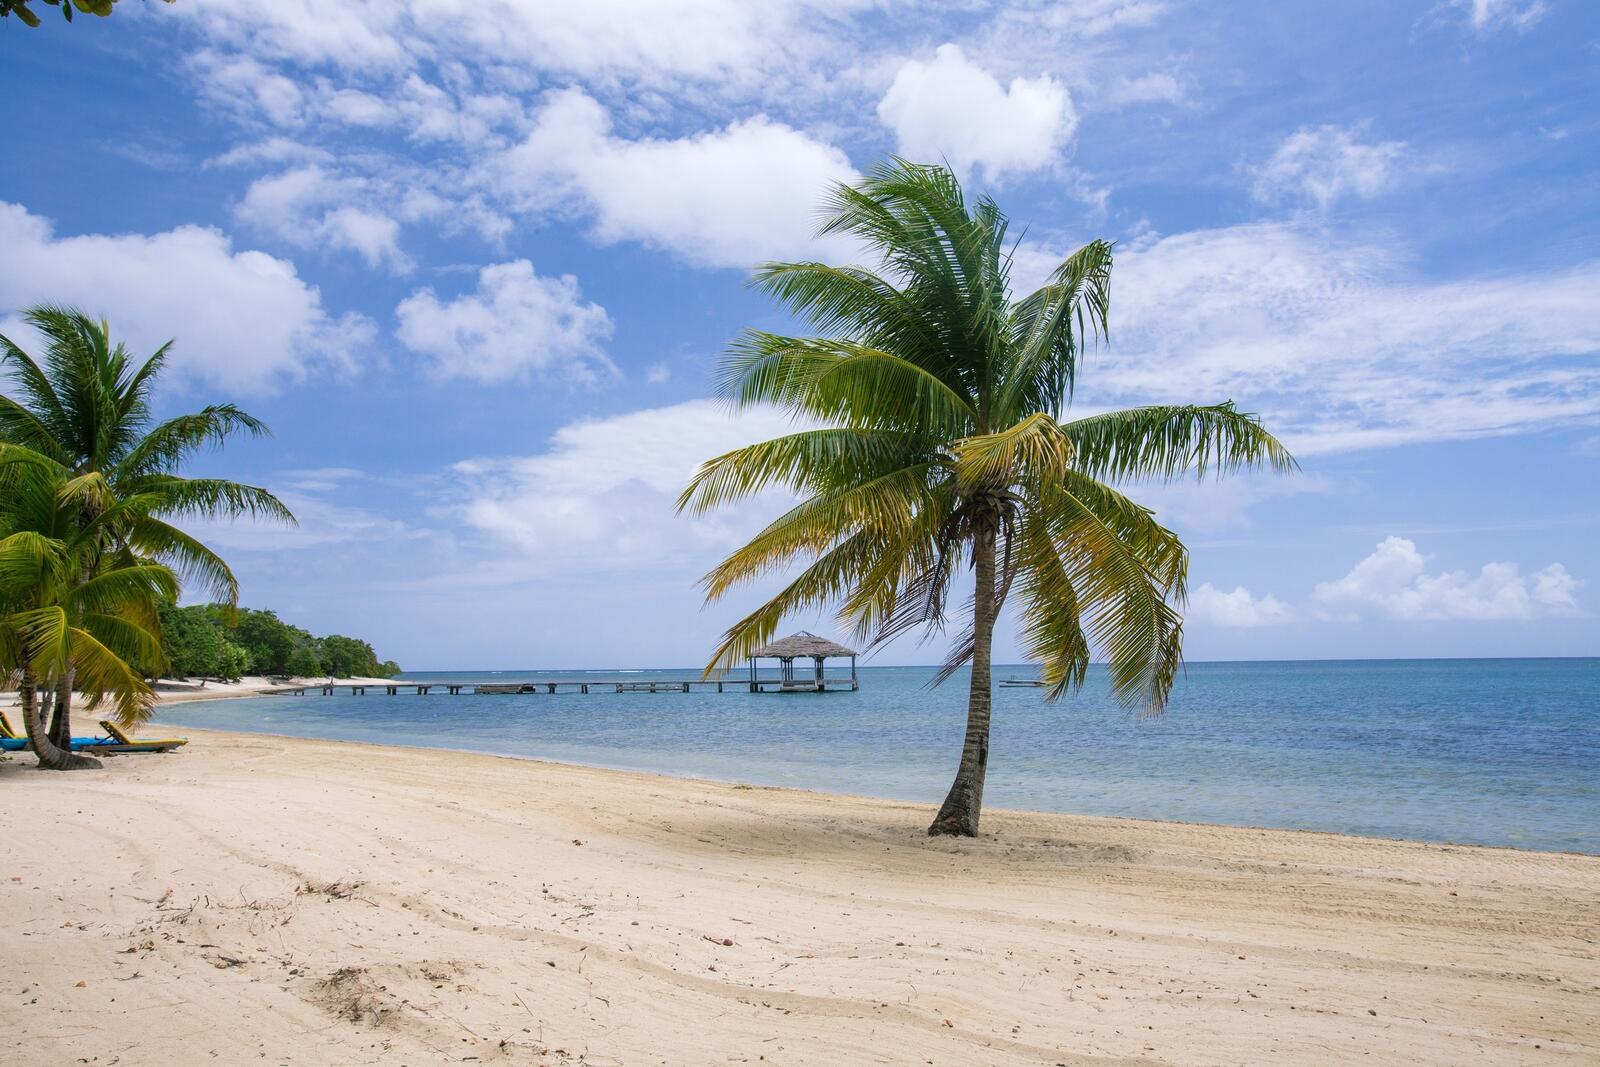 Бесплатное фото Песчаный берег с пальмами